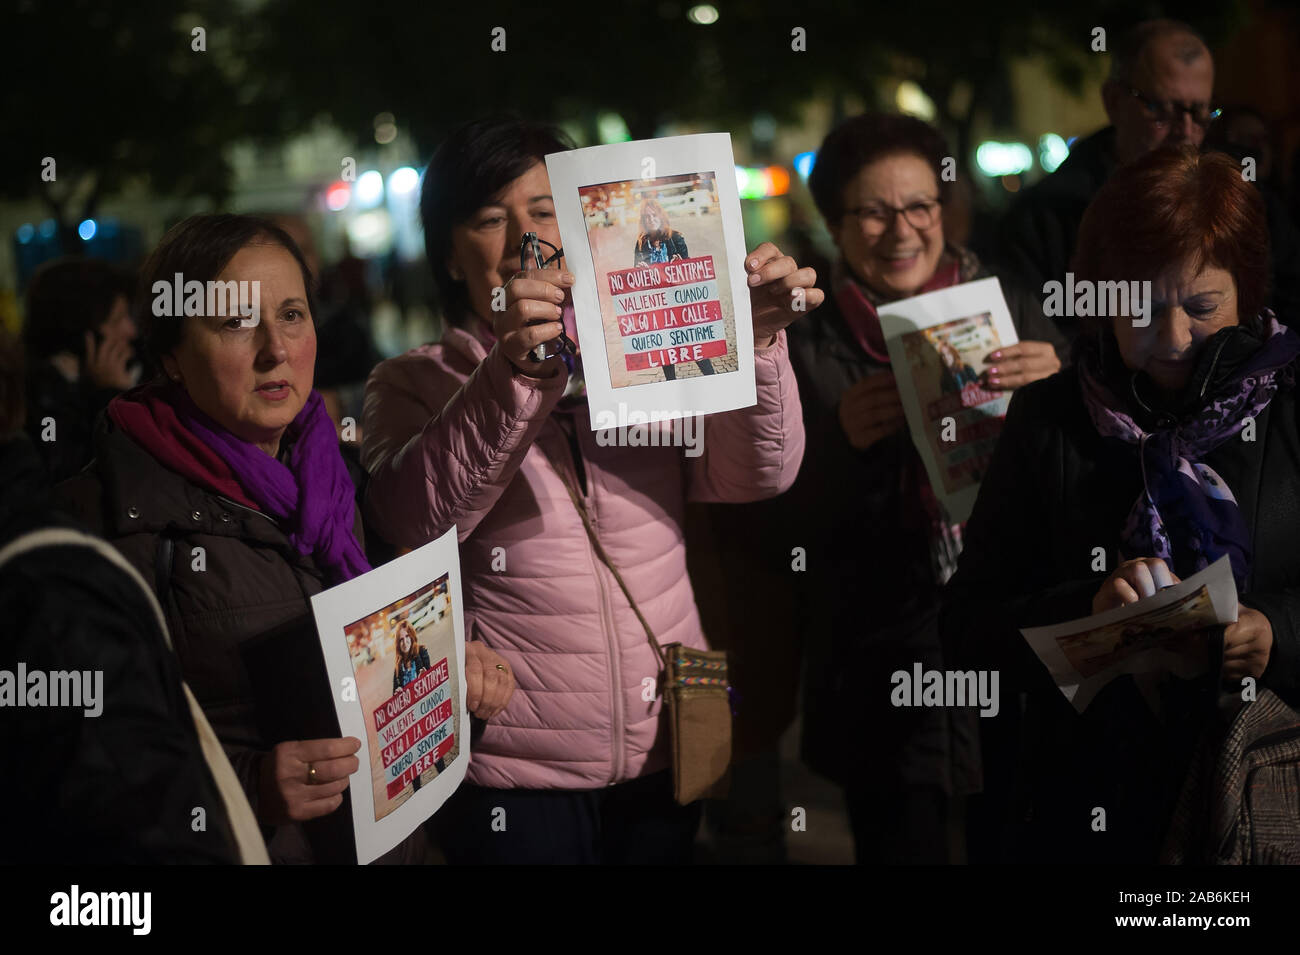 Malaga, Spagna. 25 Nov, 2019. Manifestanti tenere cartelloni durante una dimostrazione della Giornata Internazionale per lâ eliminazione della violenza contro le donne.Migliaia di persone hanno preso le strade per denunciare il feminicides e la violenza contro le donne in tutto il mondo una manifestazione denominata dalle femministe nei movimenti. Credito: SOPA Immagini limitata/Alamy Live News Foto Stock